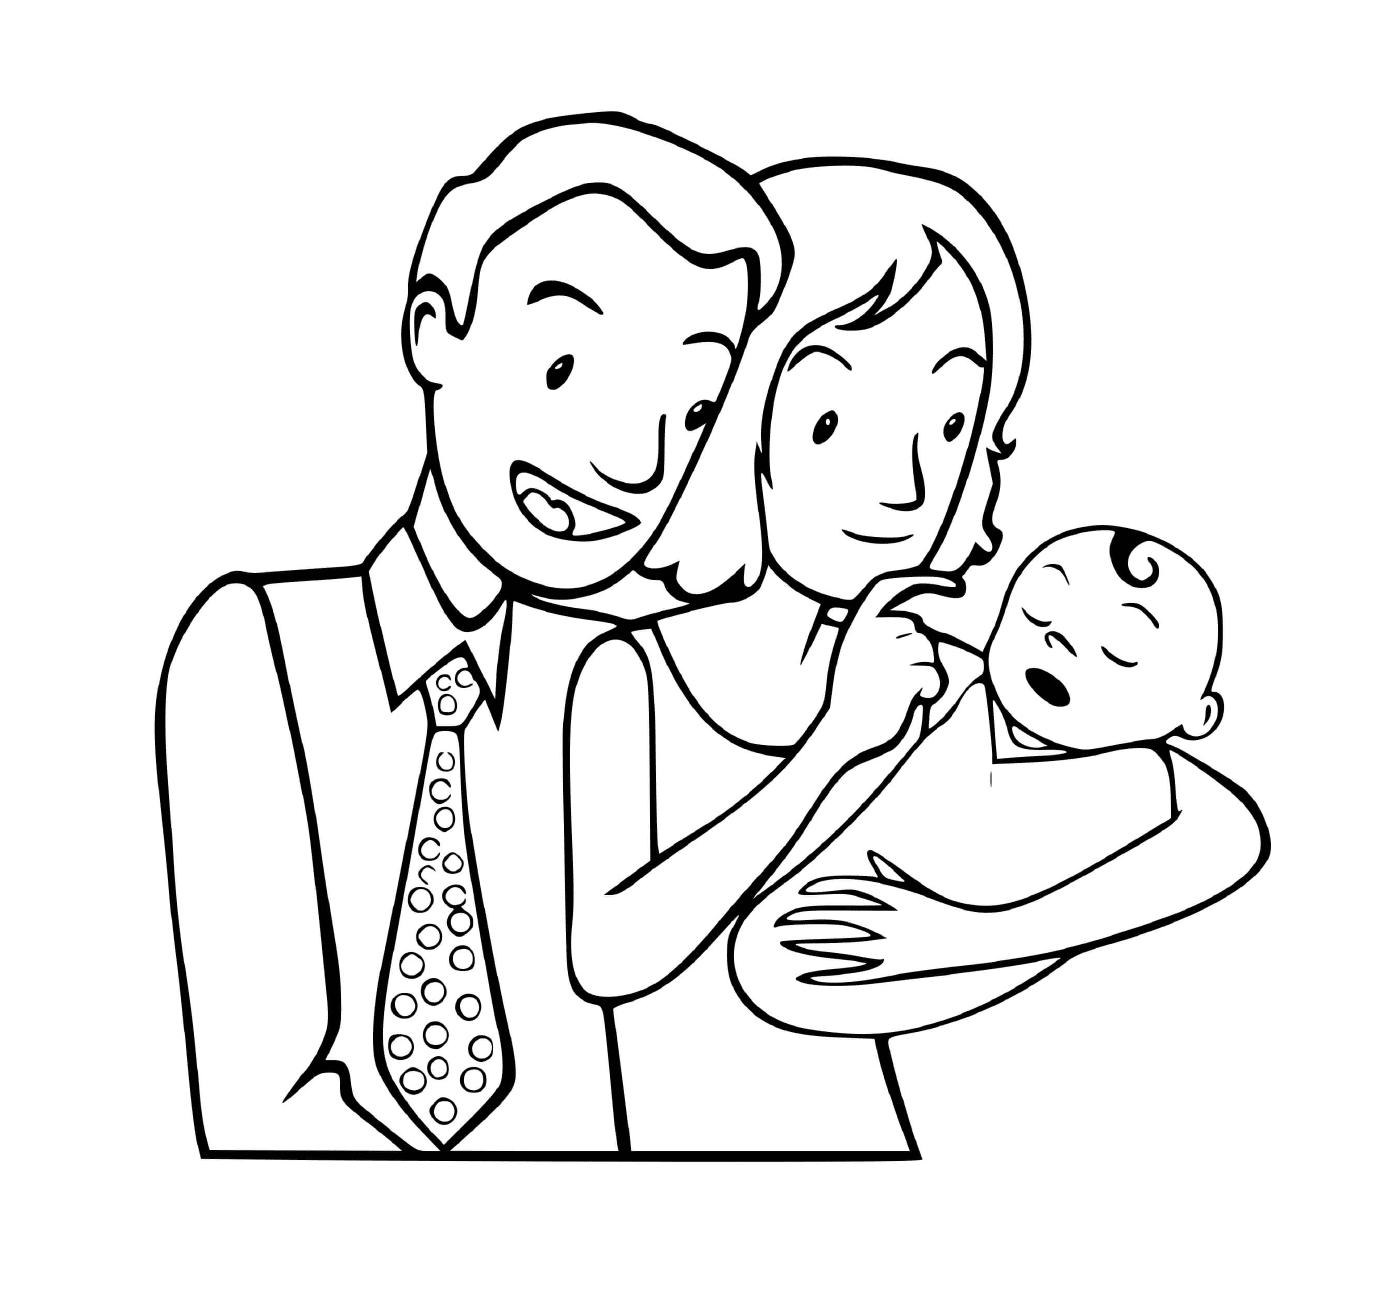   Une petite famille avec un nouveau-né 